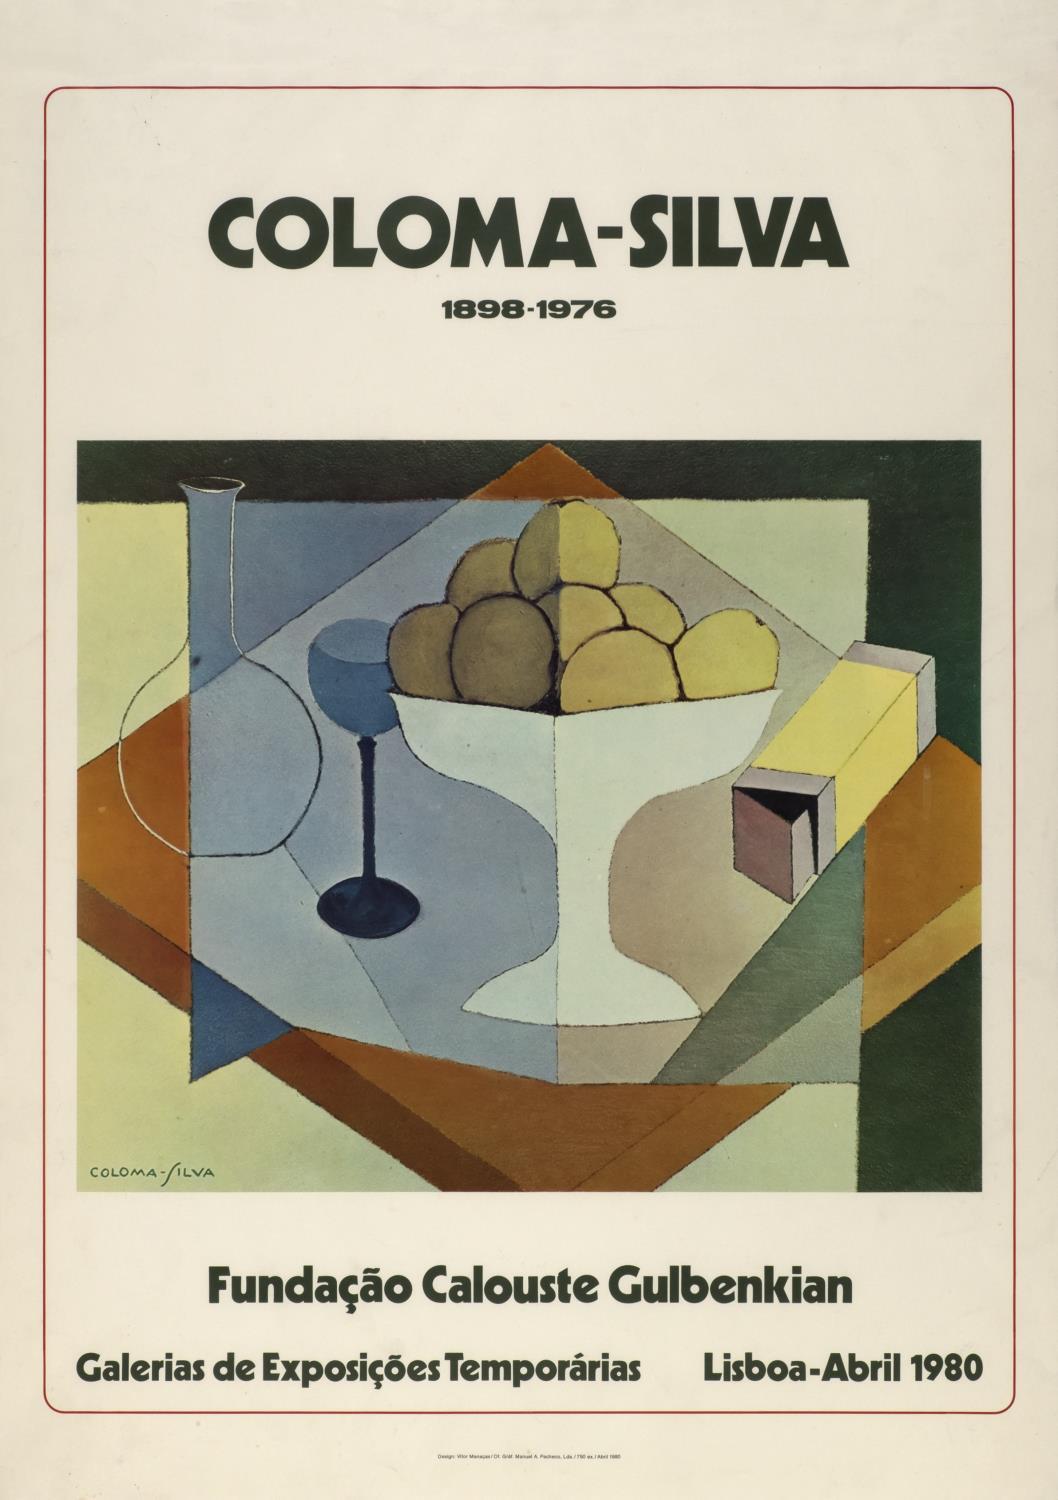 Coloma-Silva 1898 – 1976